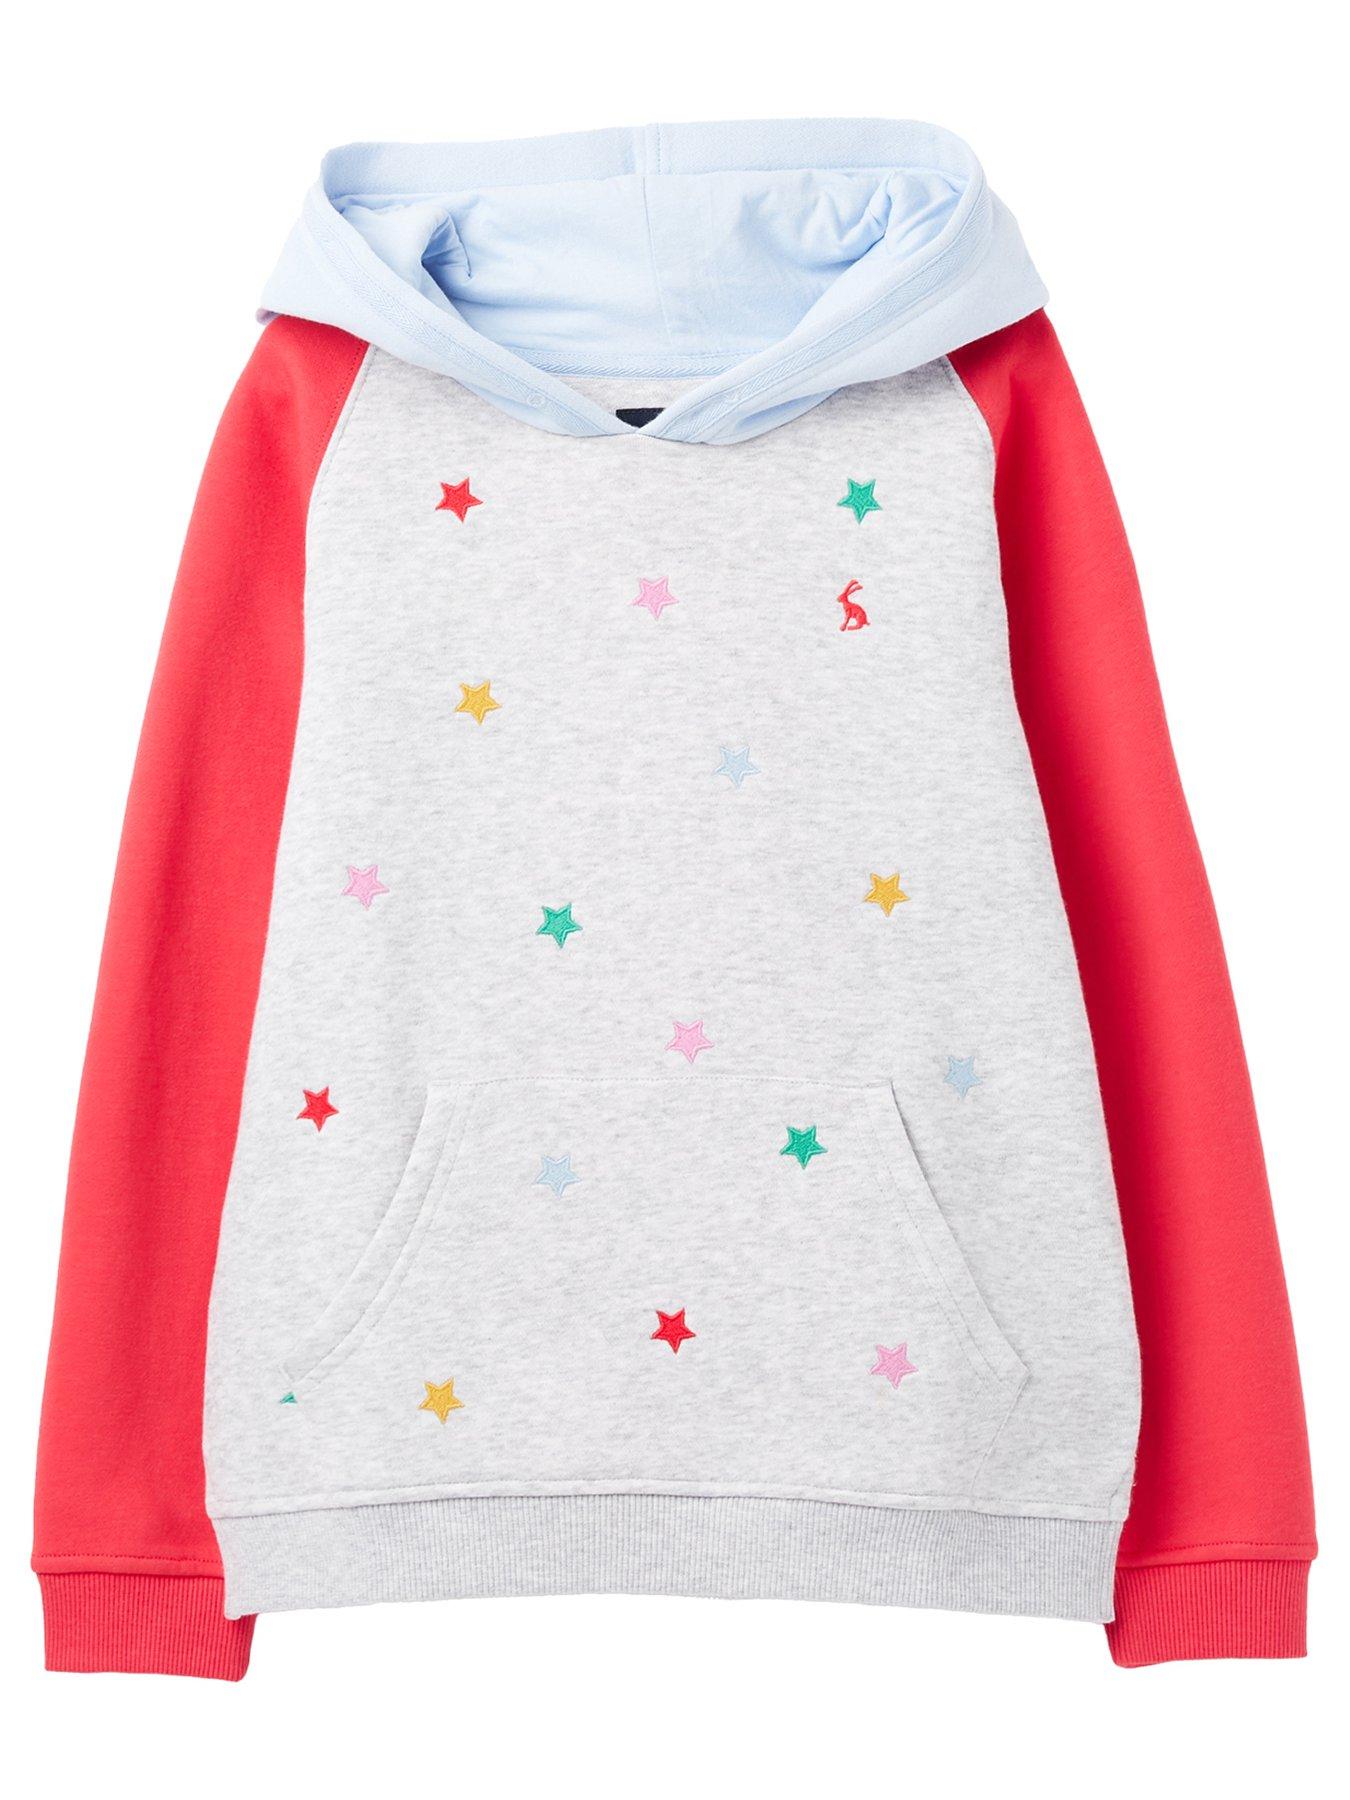 Marvel Rising Hooded Sweatshirt for Girls Multi